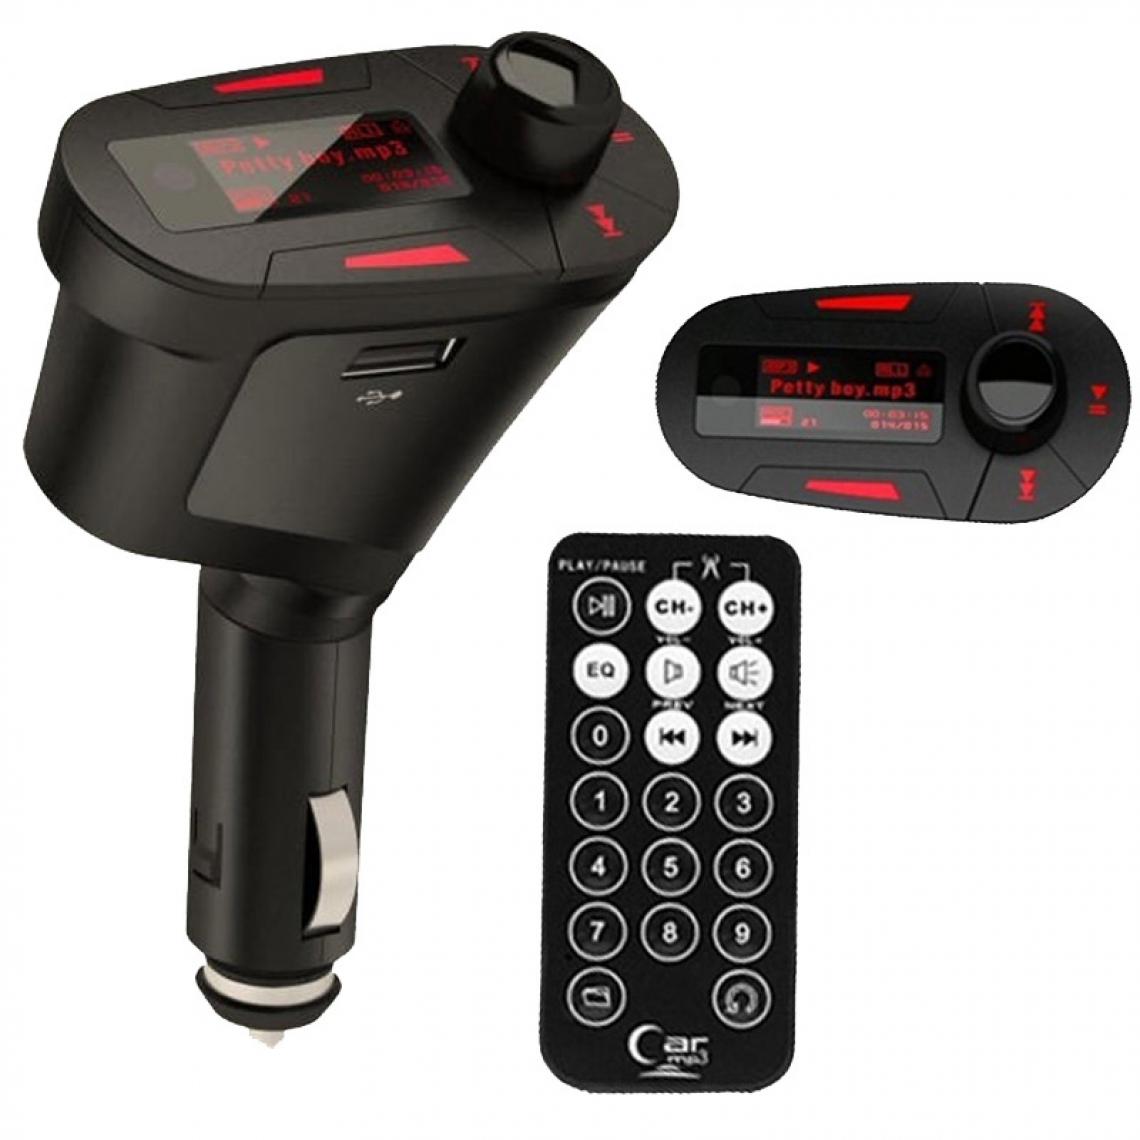 Wewoo - Transmetteur FM Auto pour carte SD / MMC sans fil de lecteur MP3 de voiture avec télécommande et écran de 1,1 pouces, support USB fente - Passerelle Multimédia